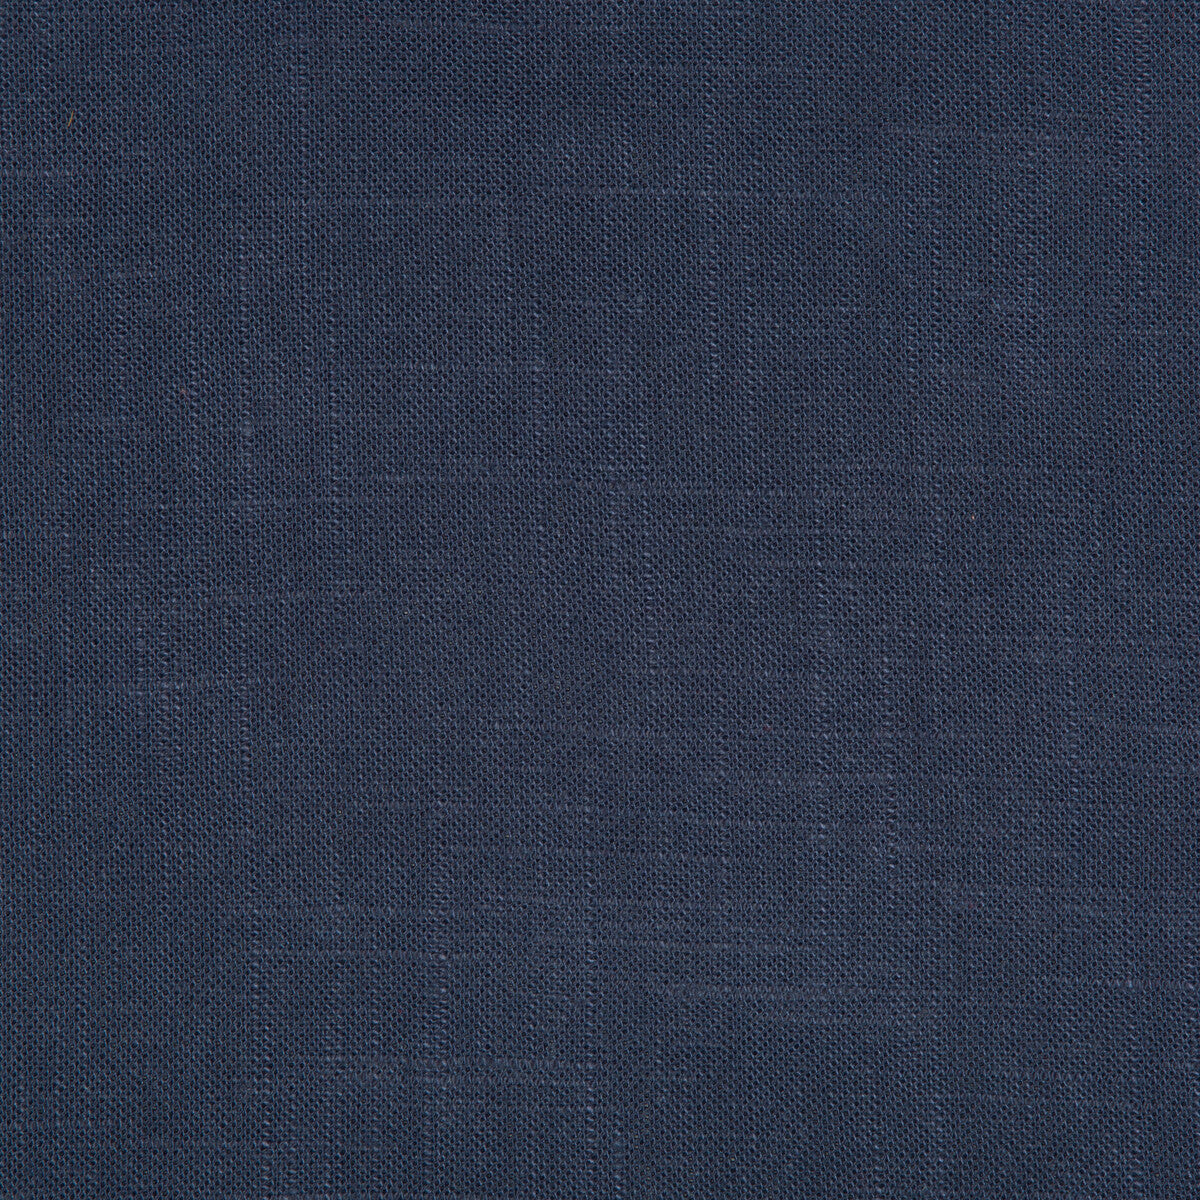 Kravet Basics fabric in 24573-5050 color - pattern 24573.5050.0 - by Kravet Basics